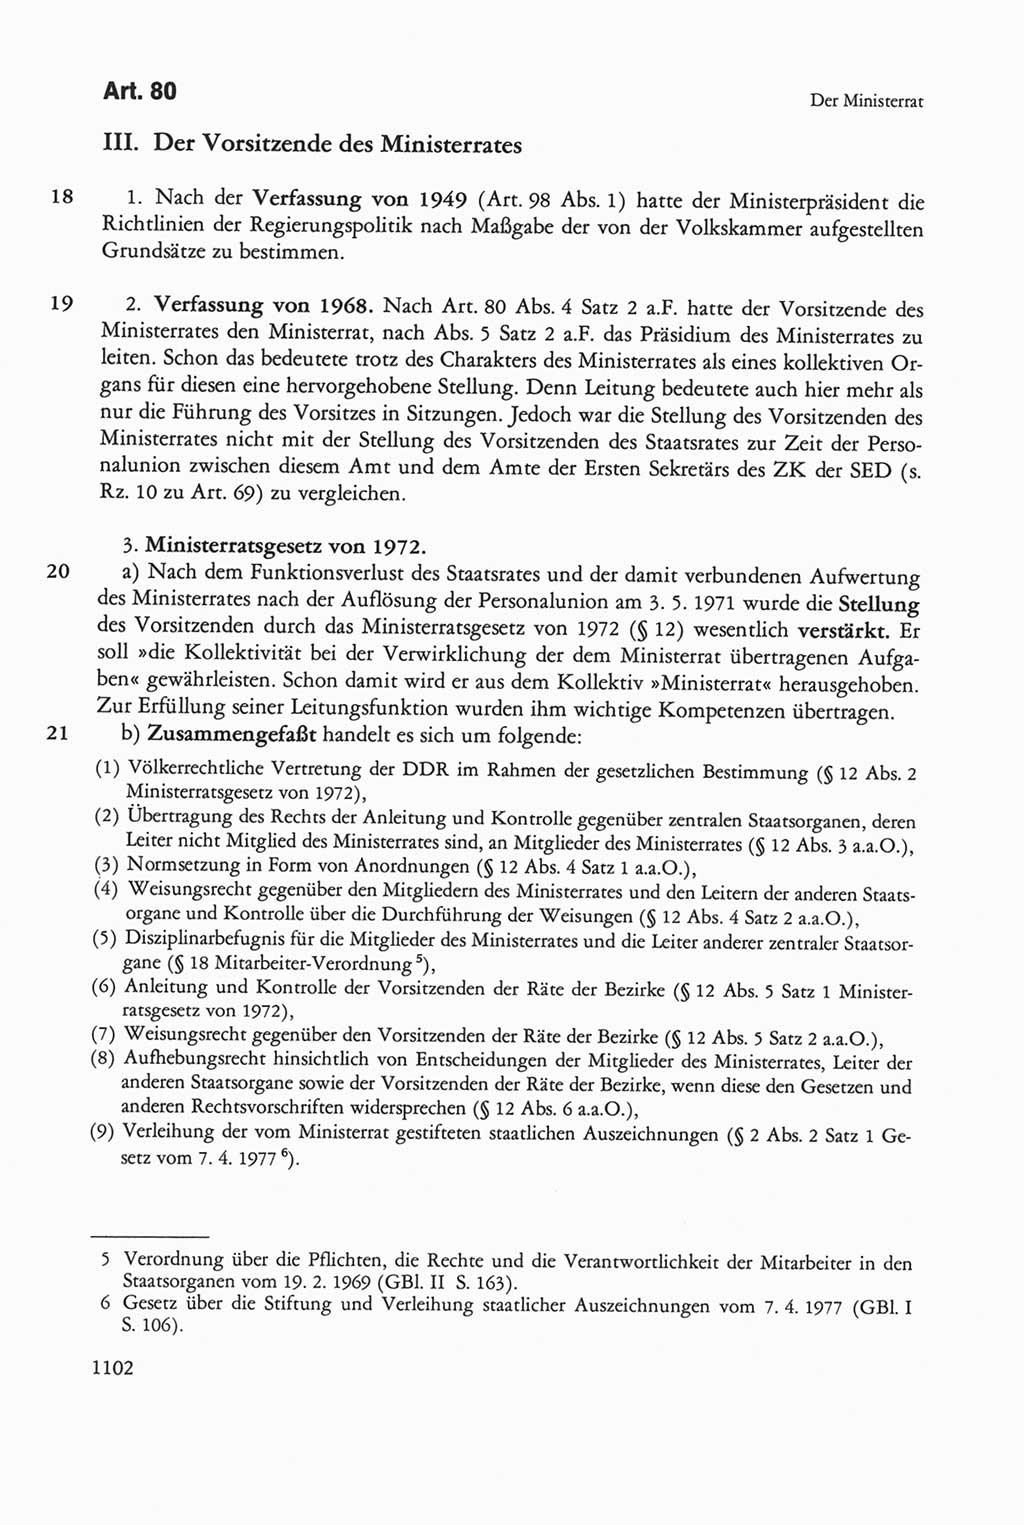 Die sozialistische Verfassung der Deutschen Demokratischen Republik (DDR), Kommentar mit einem Nachtrag 1997, Seite 1102 (Soz. Verf. DDR Komm. Nachtr. 1997, S. 1102)